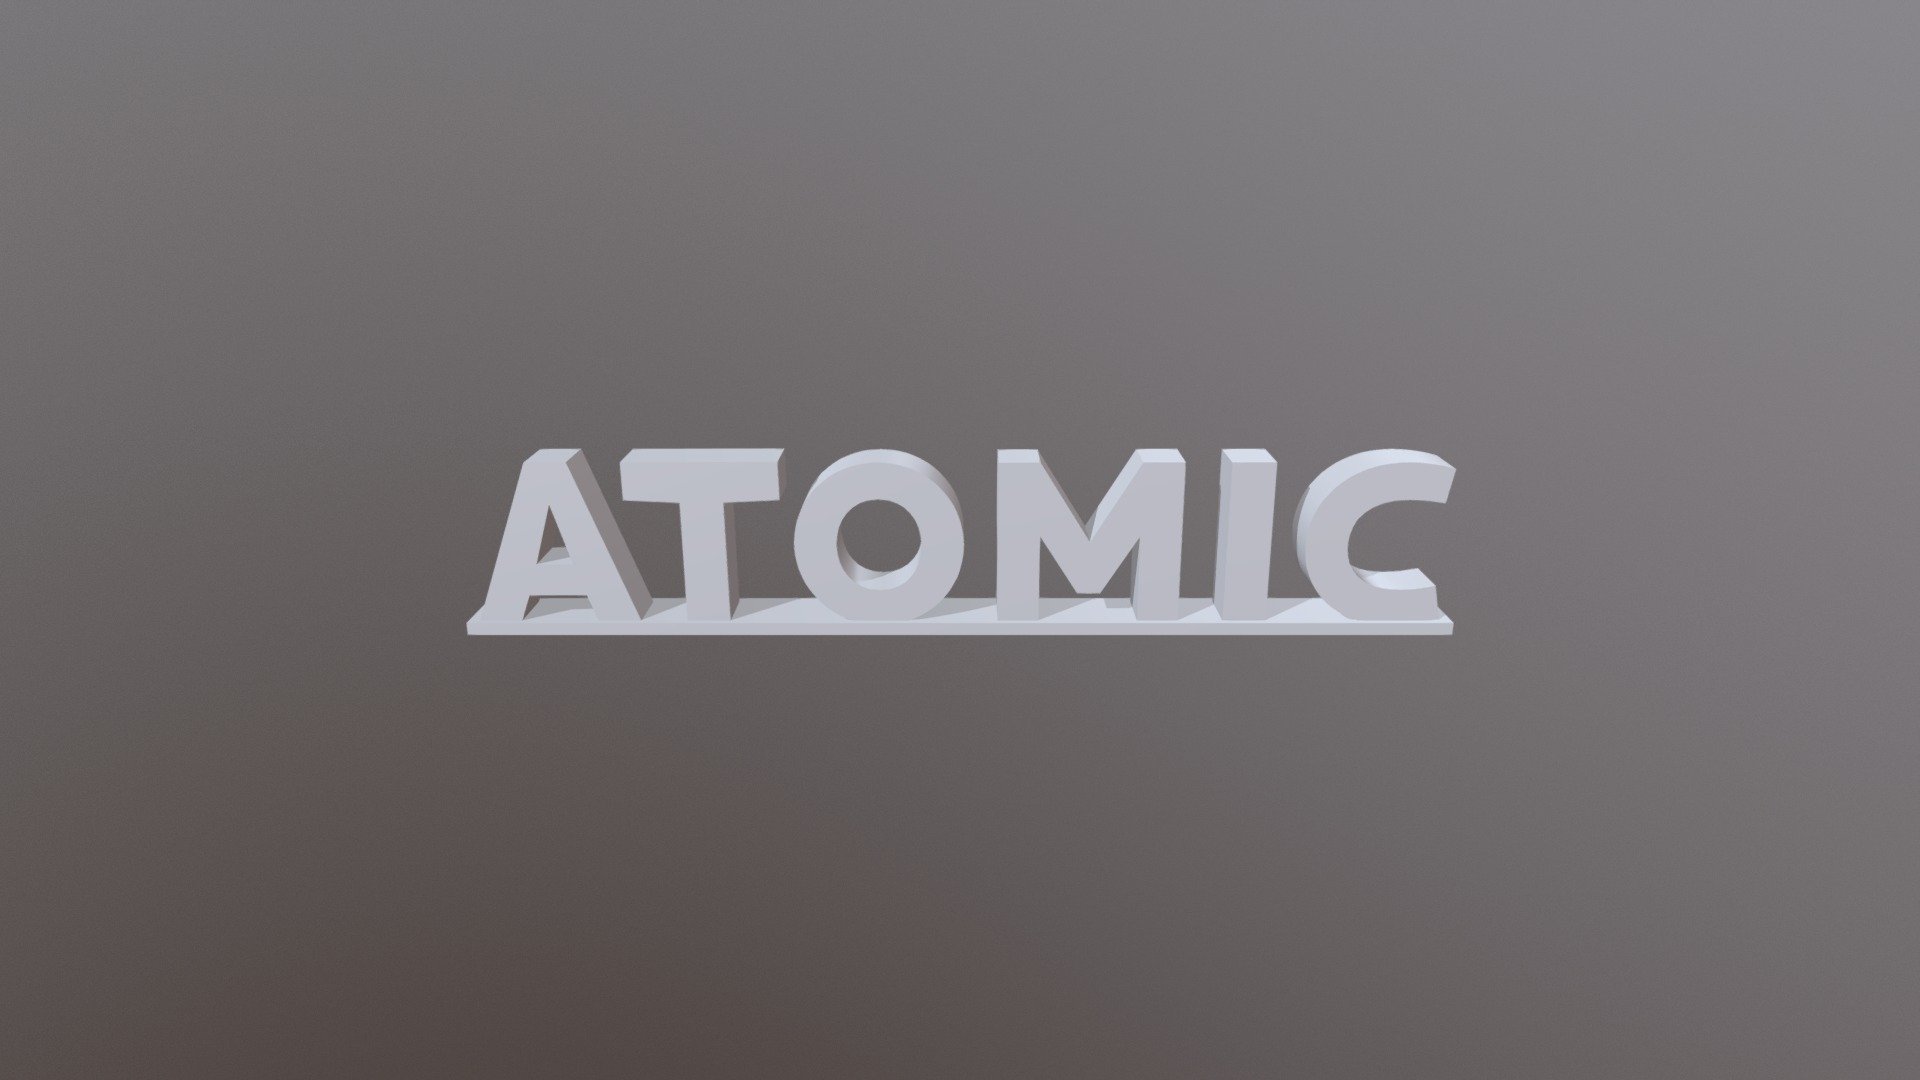 ATOMIC 3D Letters